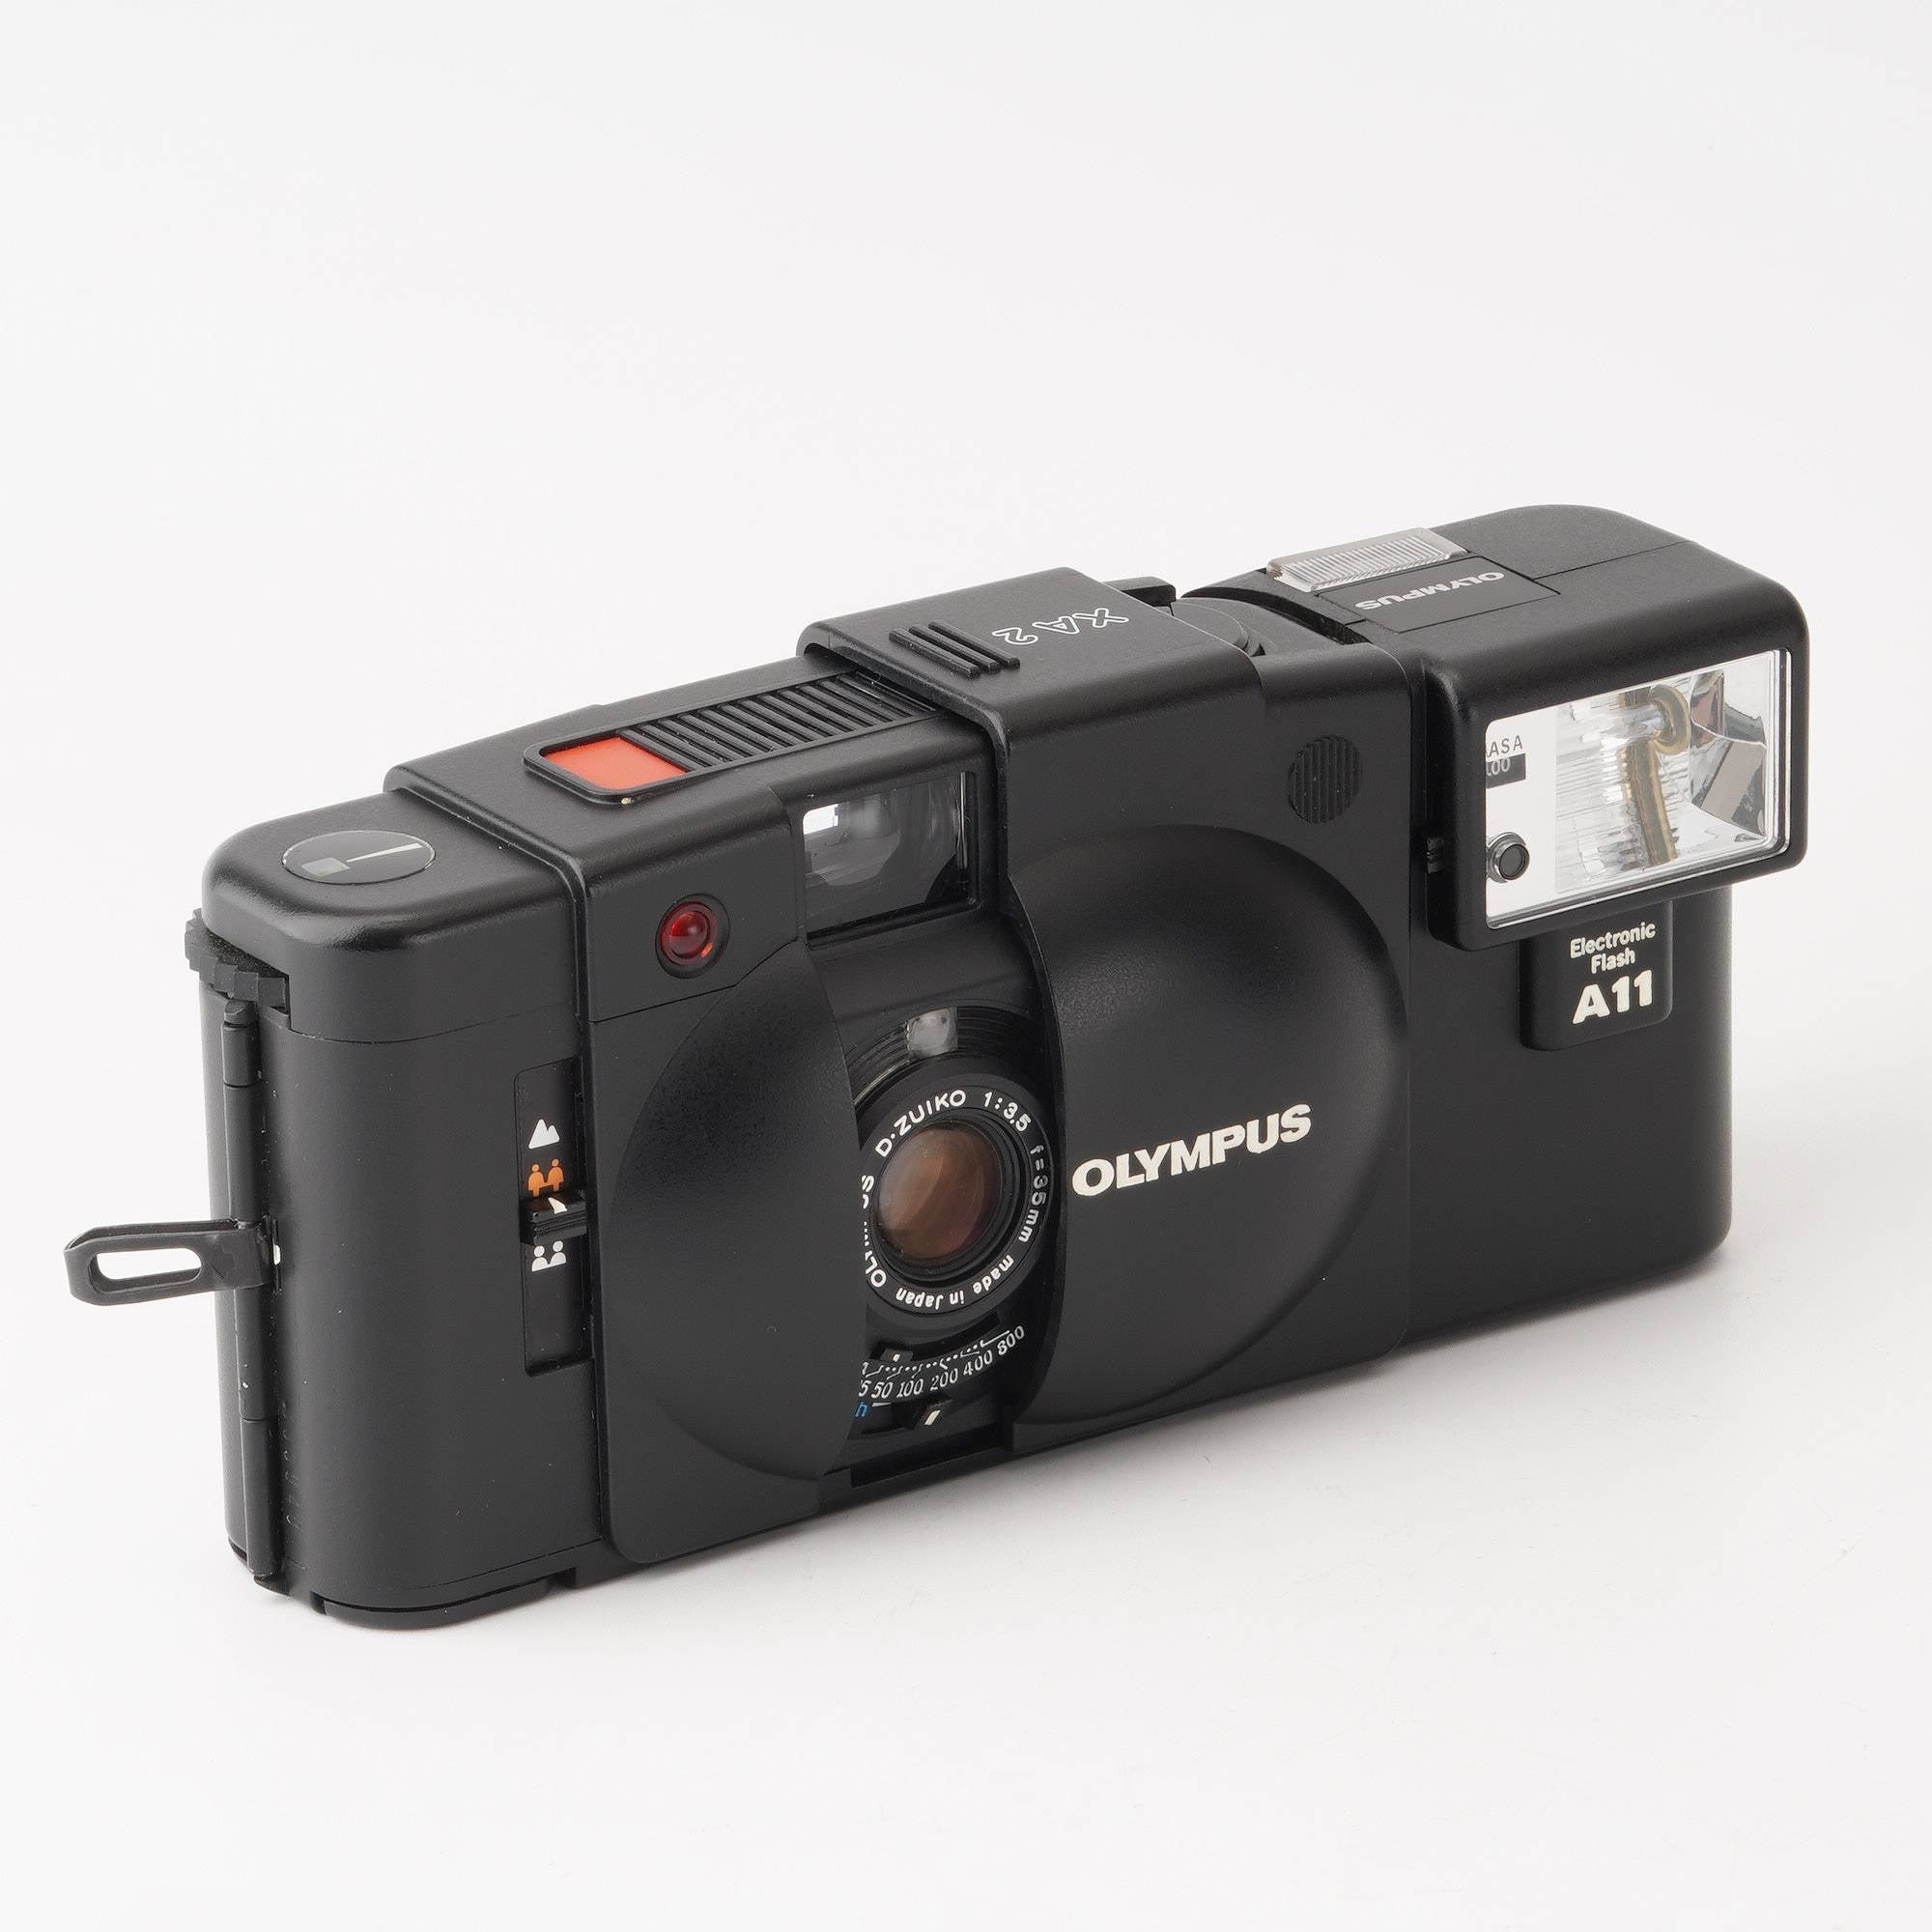 カメラ女子OLYMPUS XA2 + フラッシュA11 - フィルムカメラ